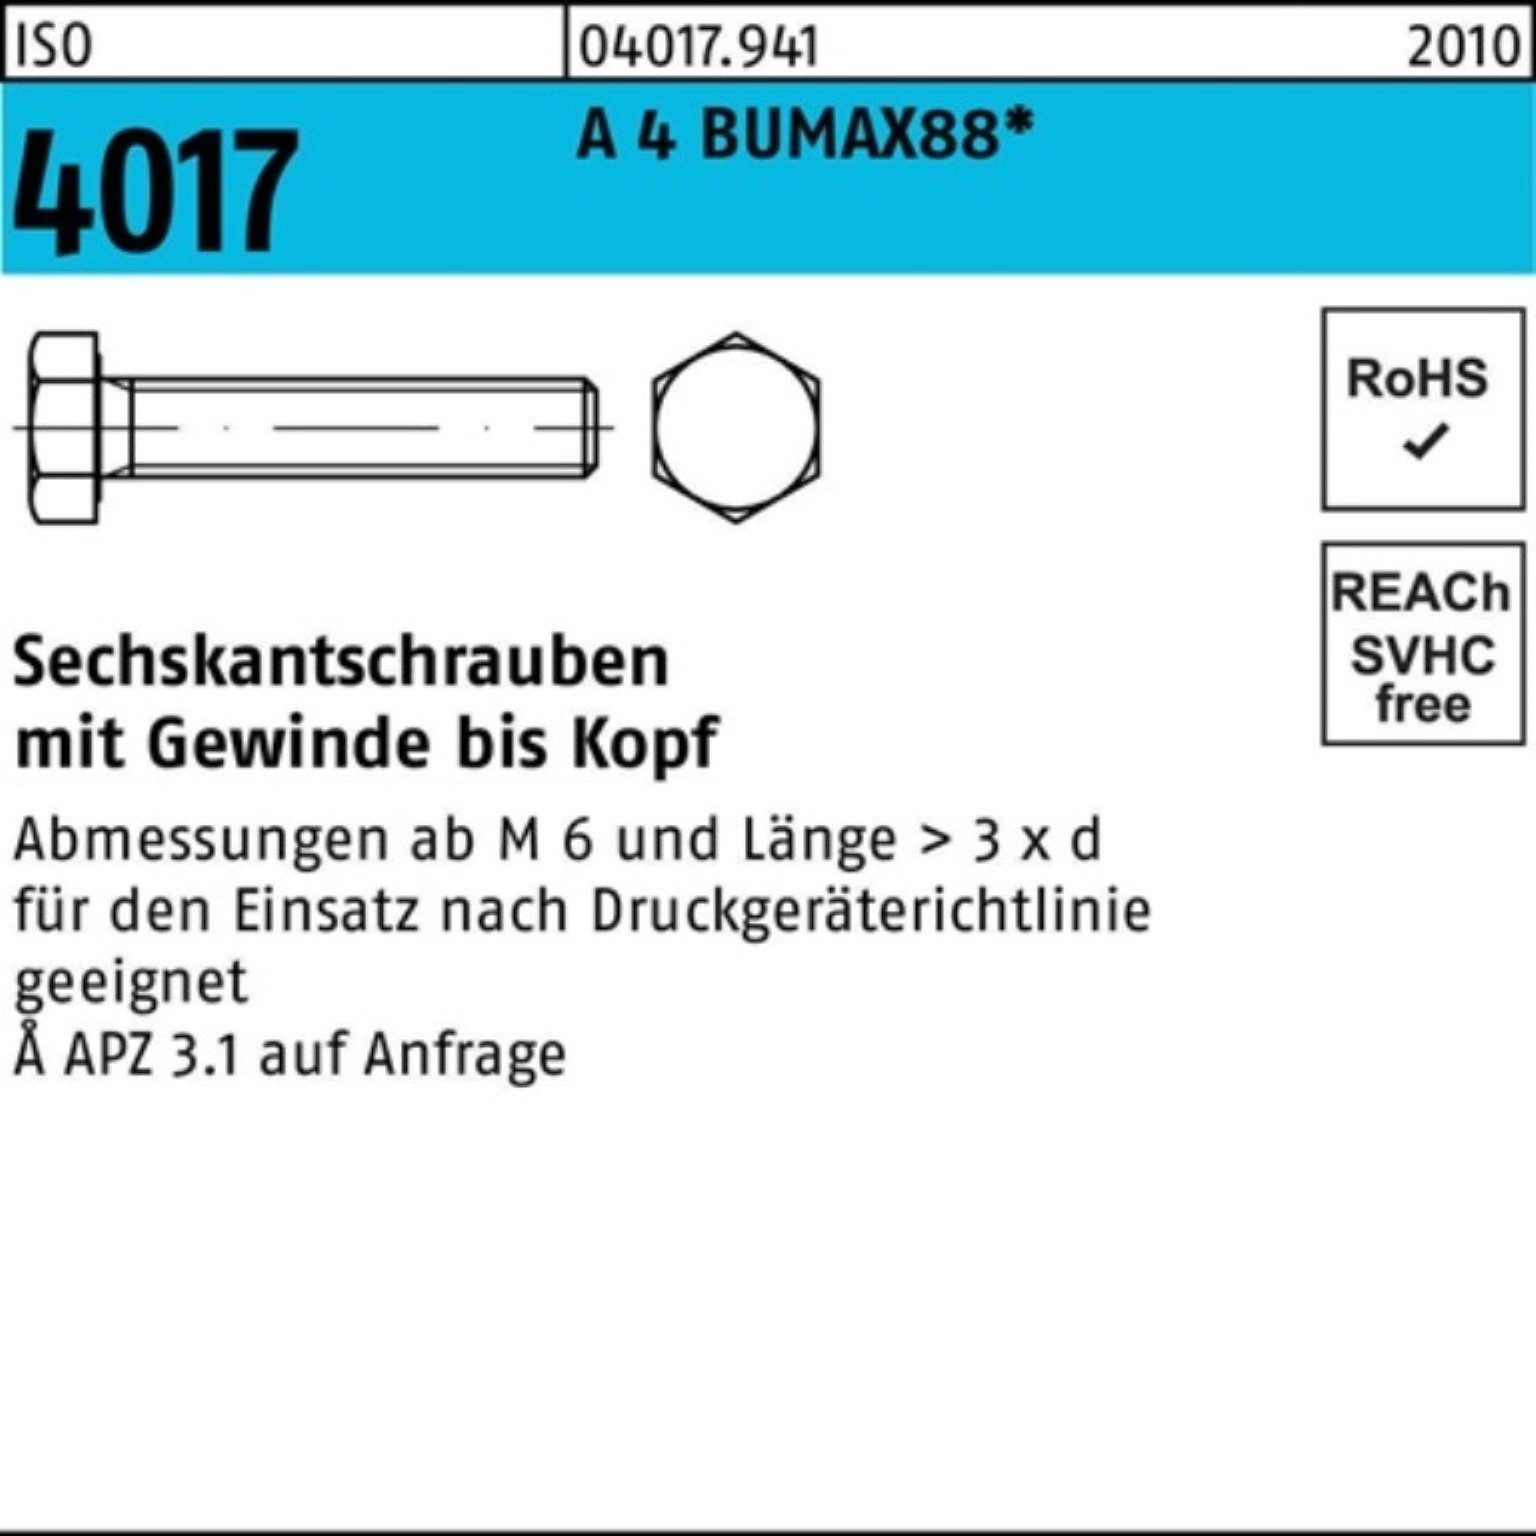 Bufab Sechskantschraube 100er 25 4 M5x Stück VG BUMAX88 4017 Sechskantschraube A Pack ISO 100